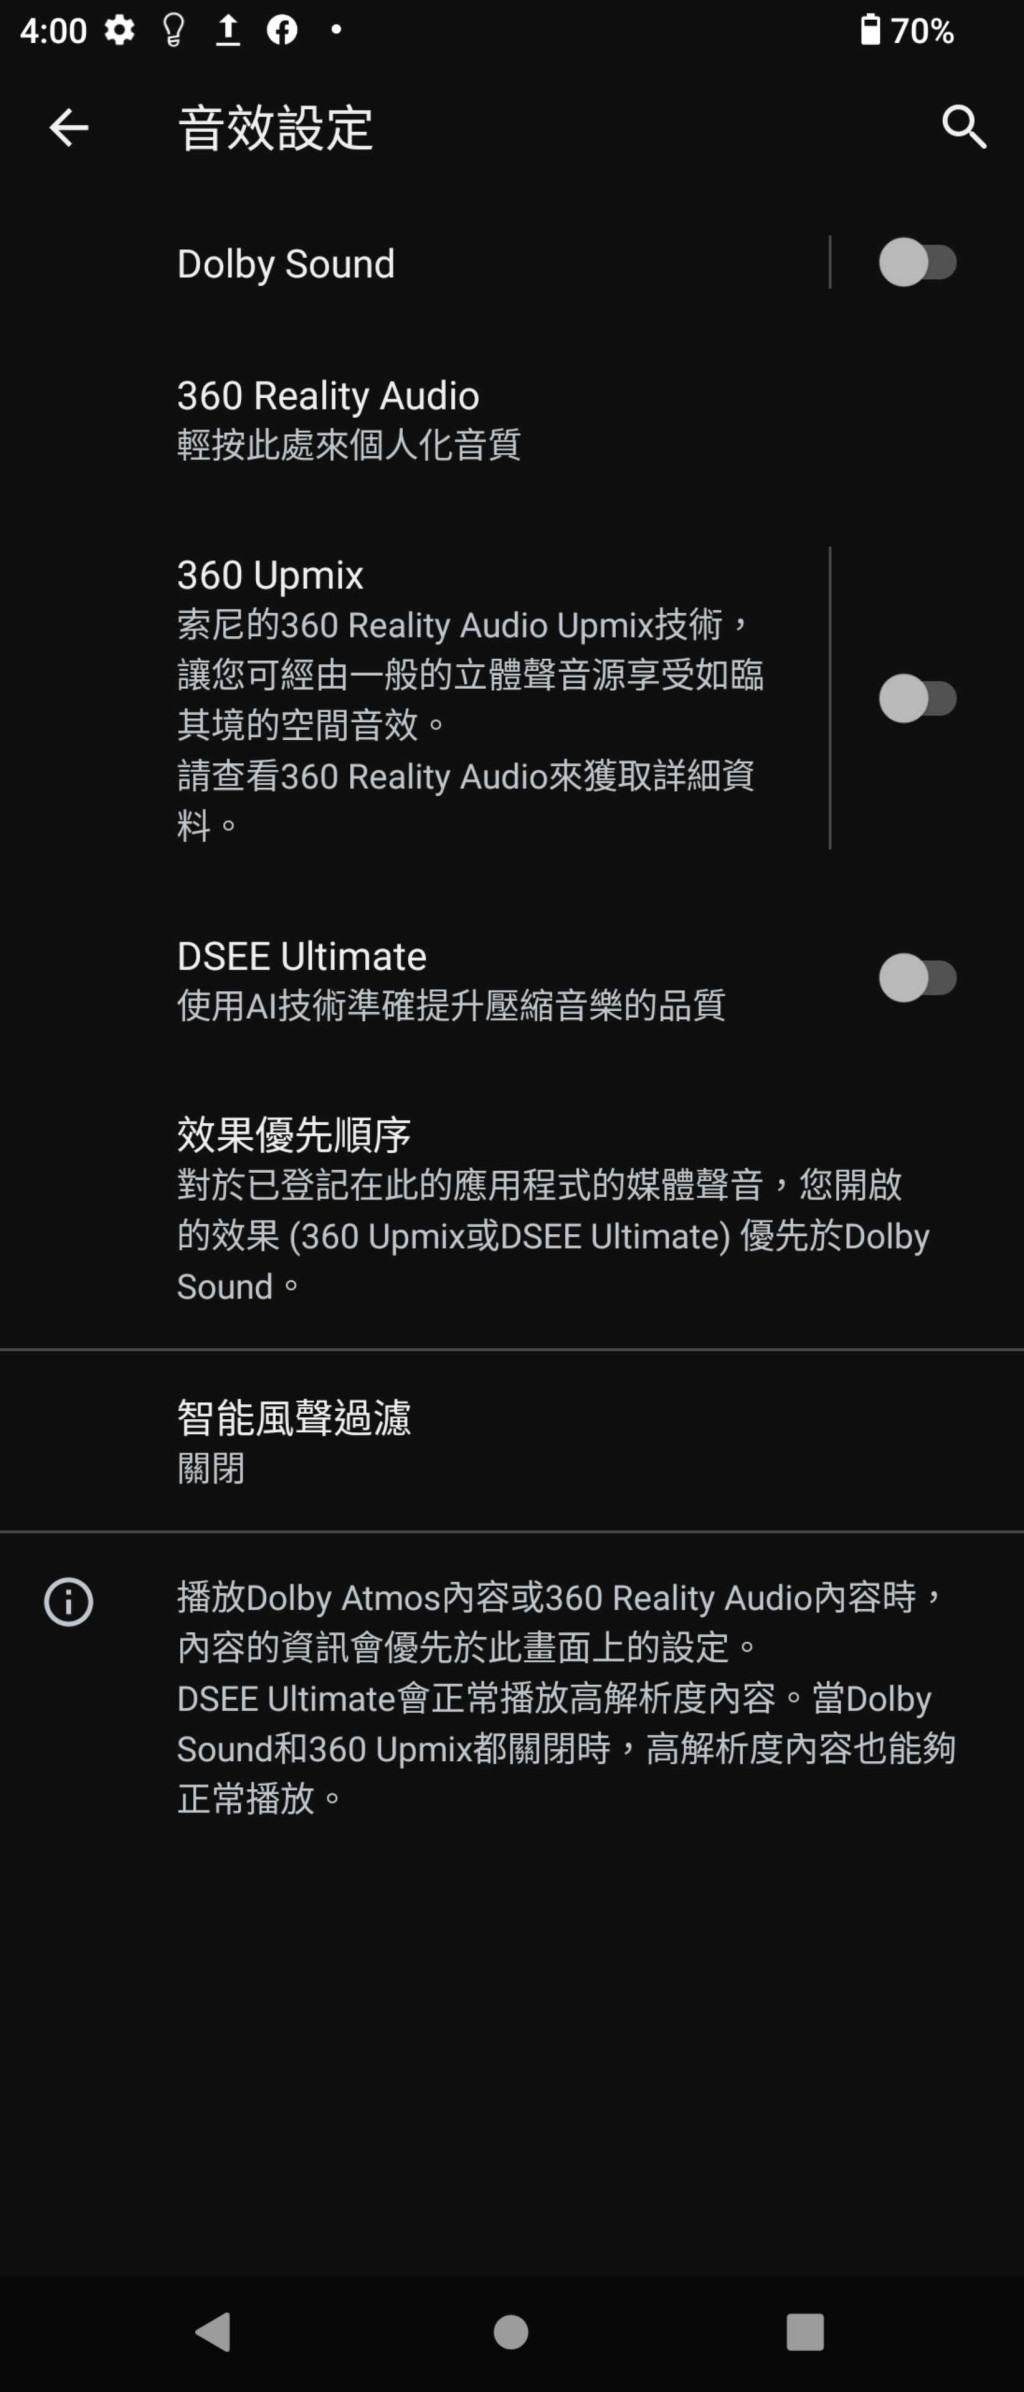 新增360 Upmix功能可將立體聲音源提升360 Reality Audio空間音效。